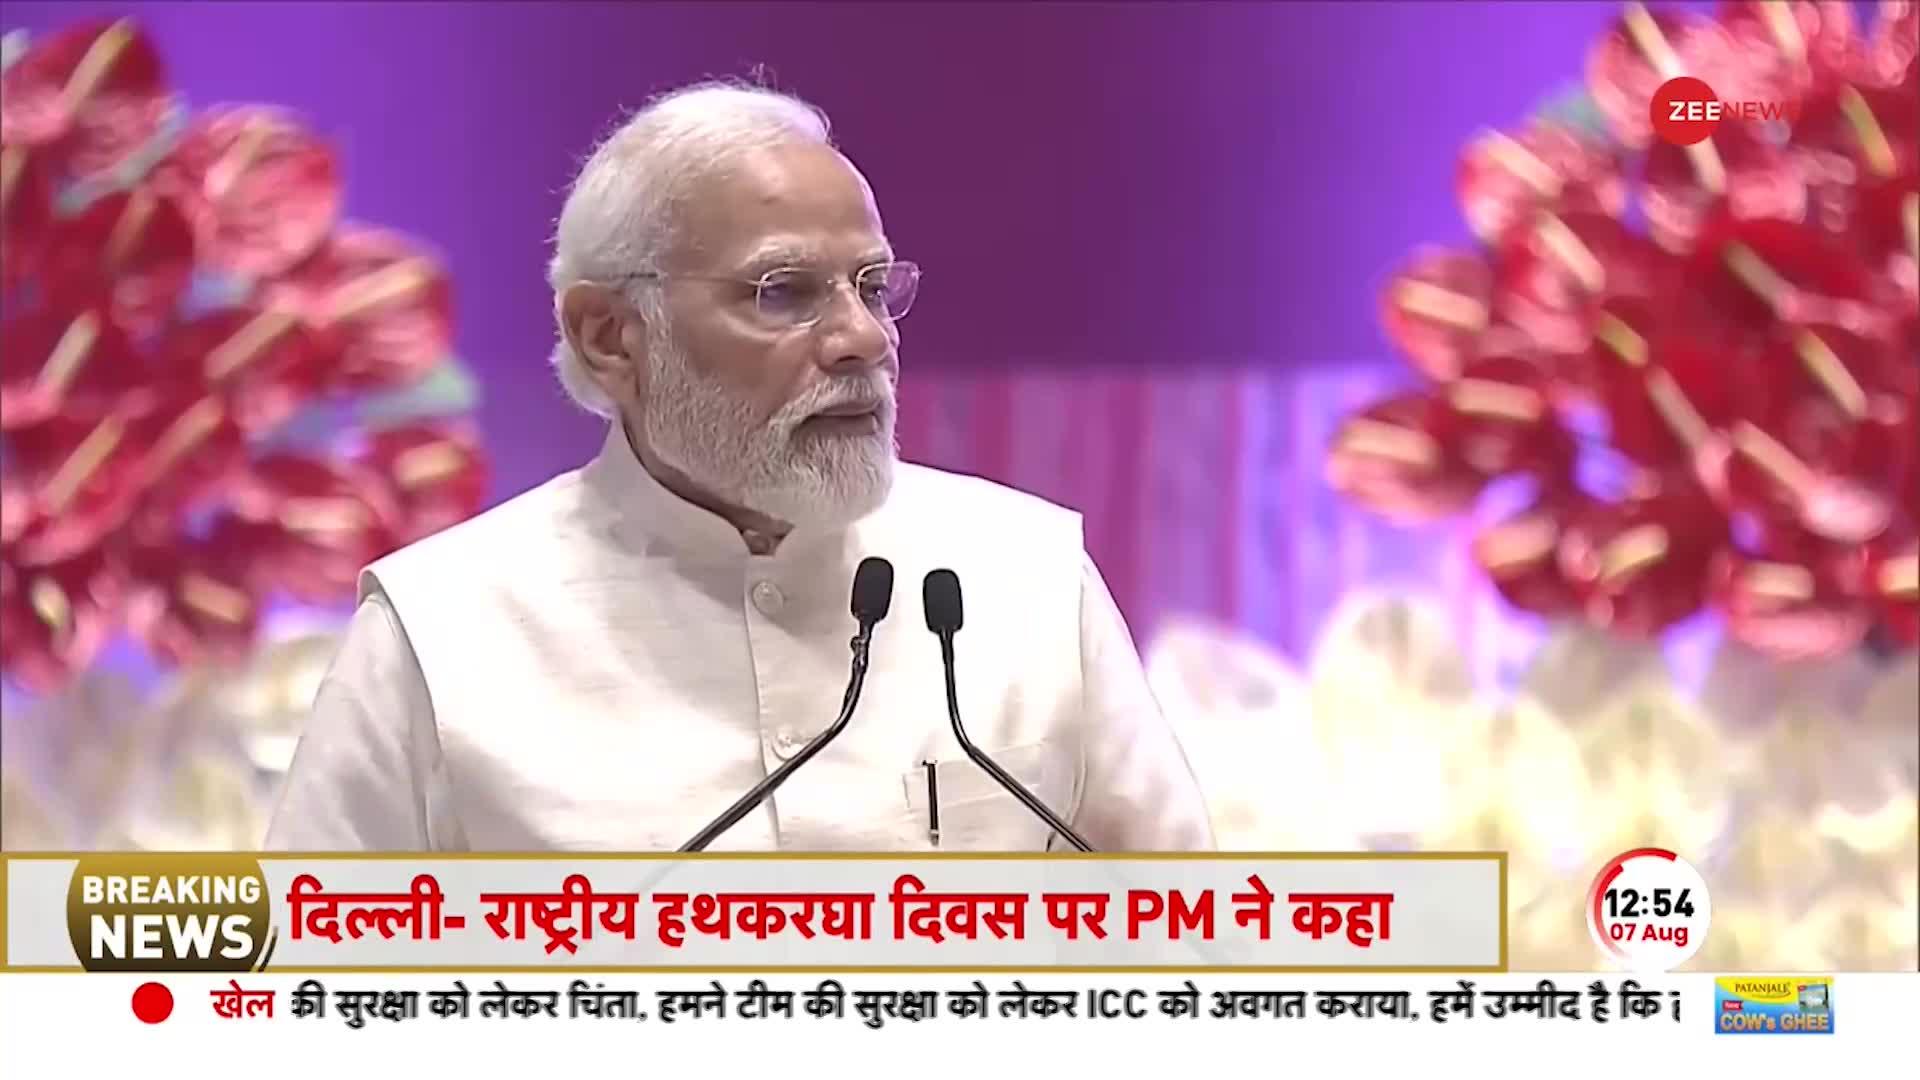 PM Modi Speech: राष्ट्रीय हथकरघा दिवस पर बोले PM मोदी- भारत तेजी से आगे बढ़ रहा है